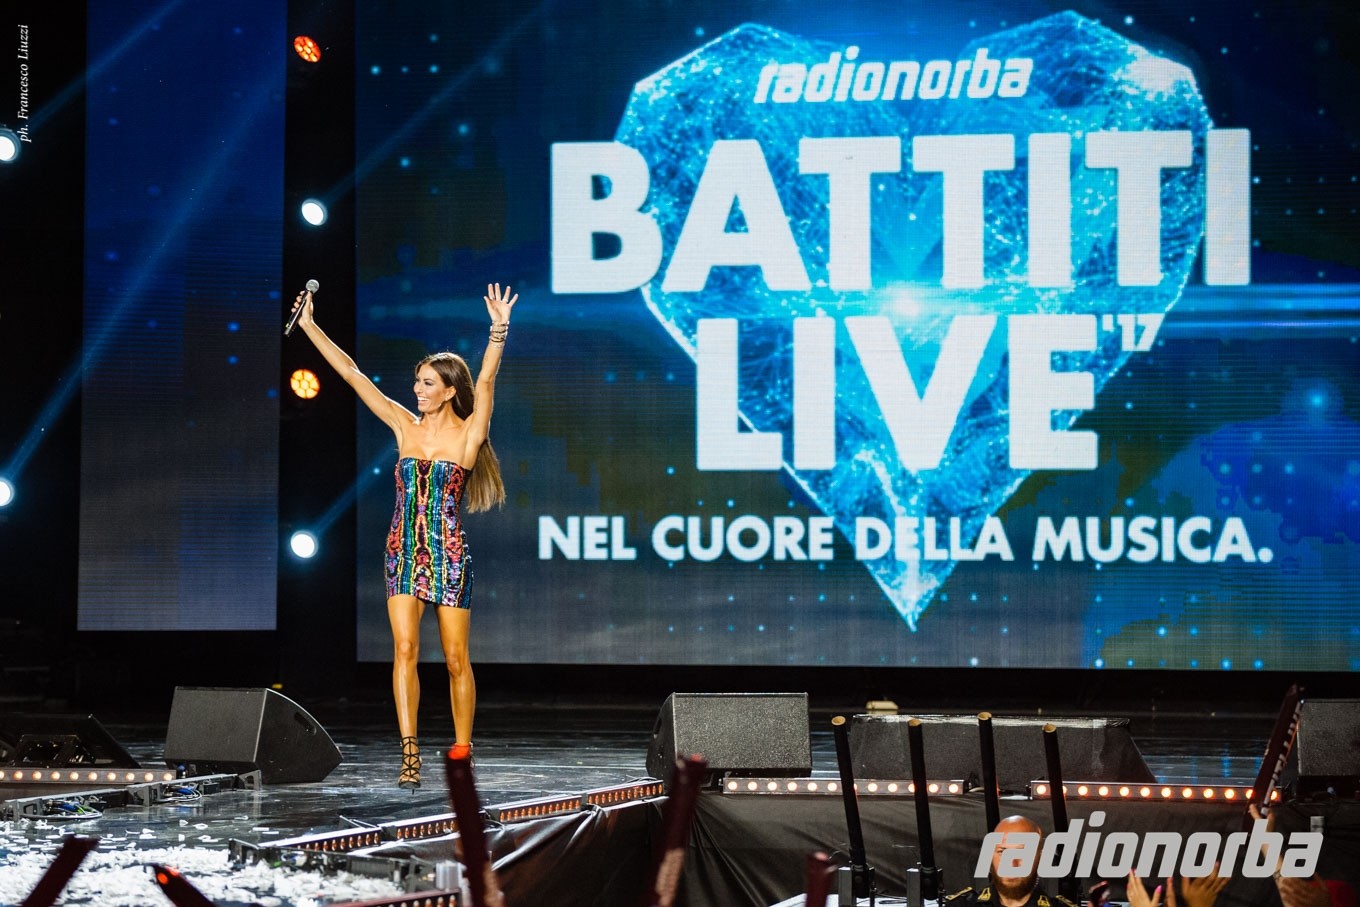 Elisabetta Gregoraci conduce Radionorba Battiti Live: “Spettacolo fantastico”